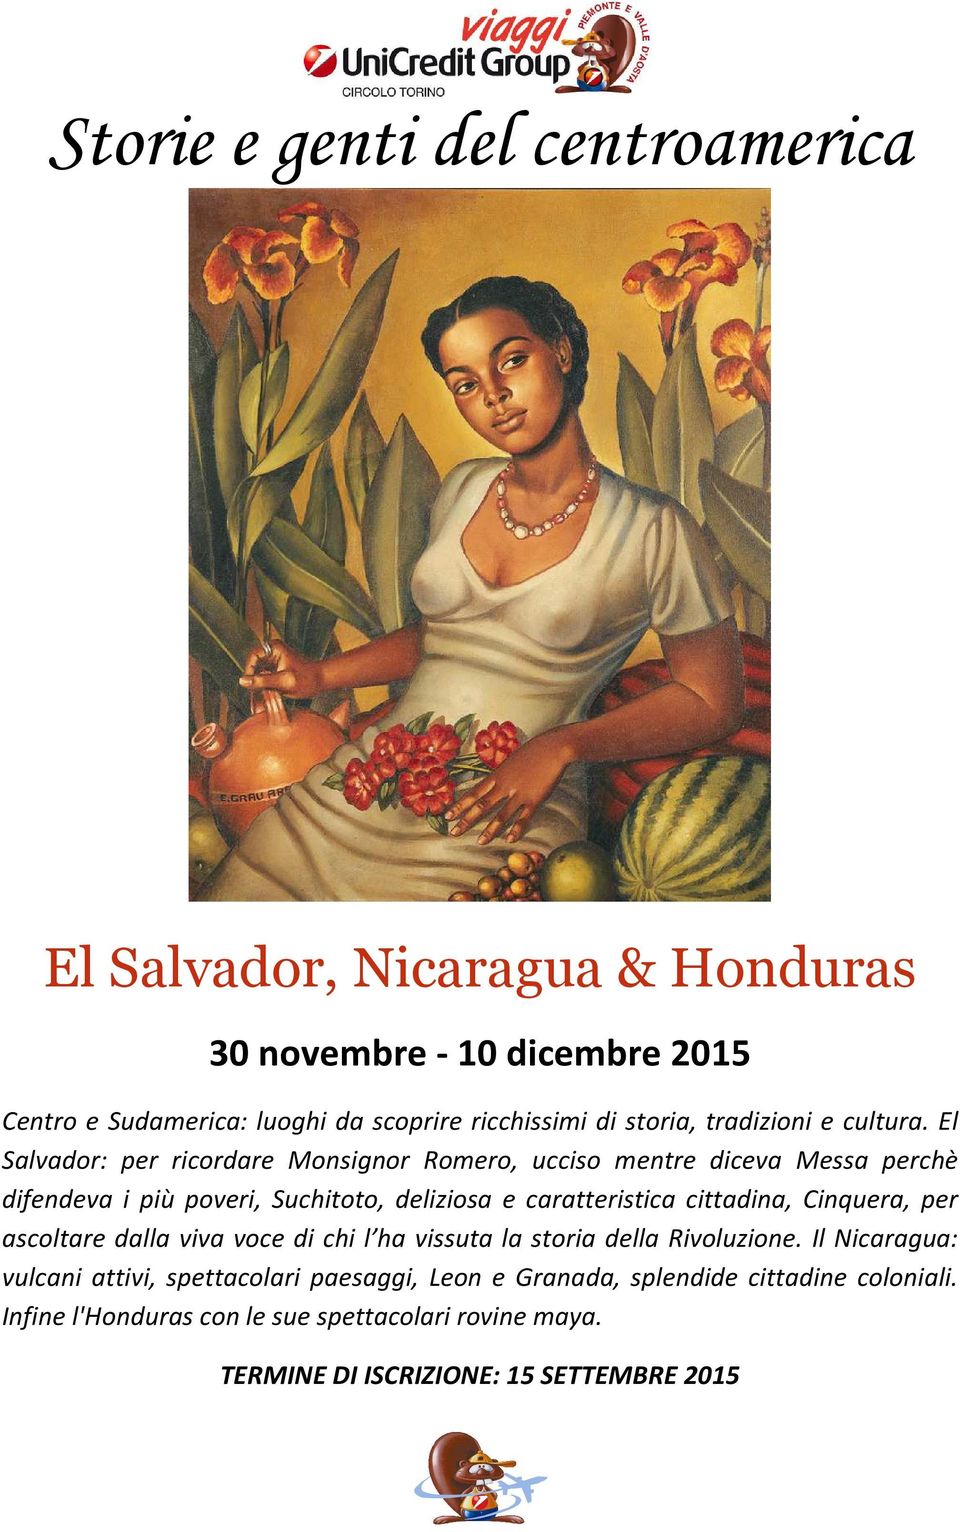 El Salvador: per ricordare Monsignor Romero, ucciso mentre diceva Messa perchè difendeva i più poveri, Suchitoto, deliziosa e caratteristica cittadina,